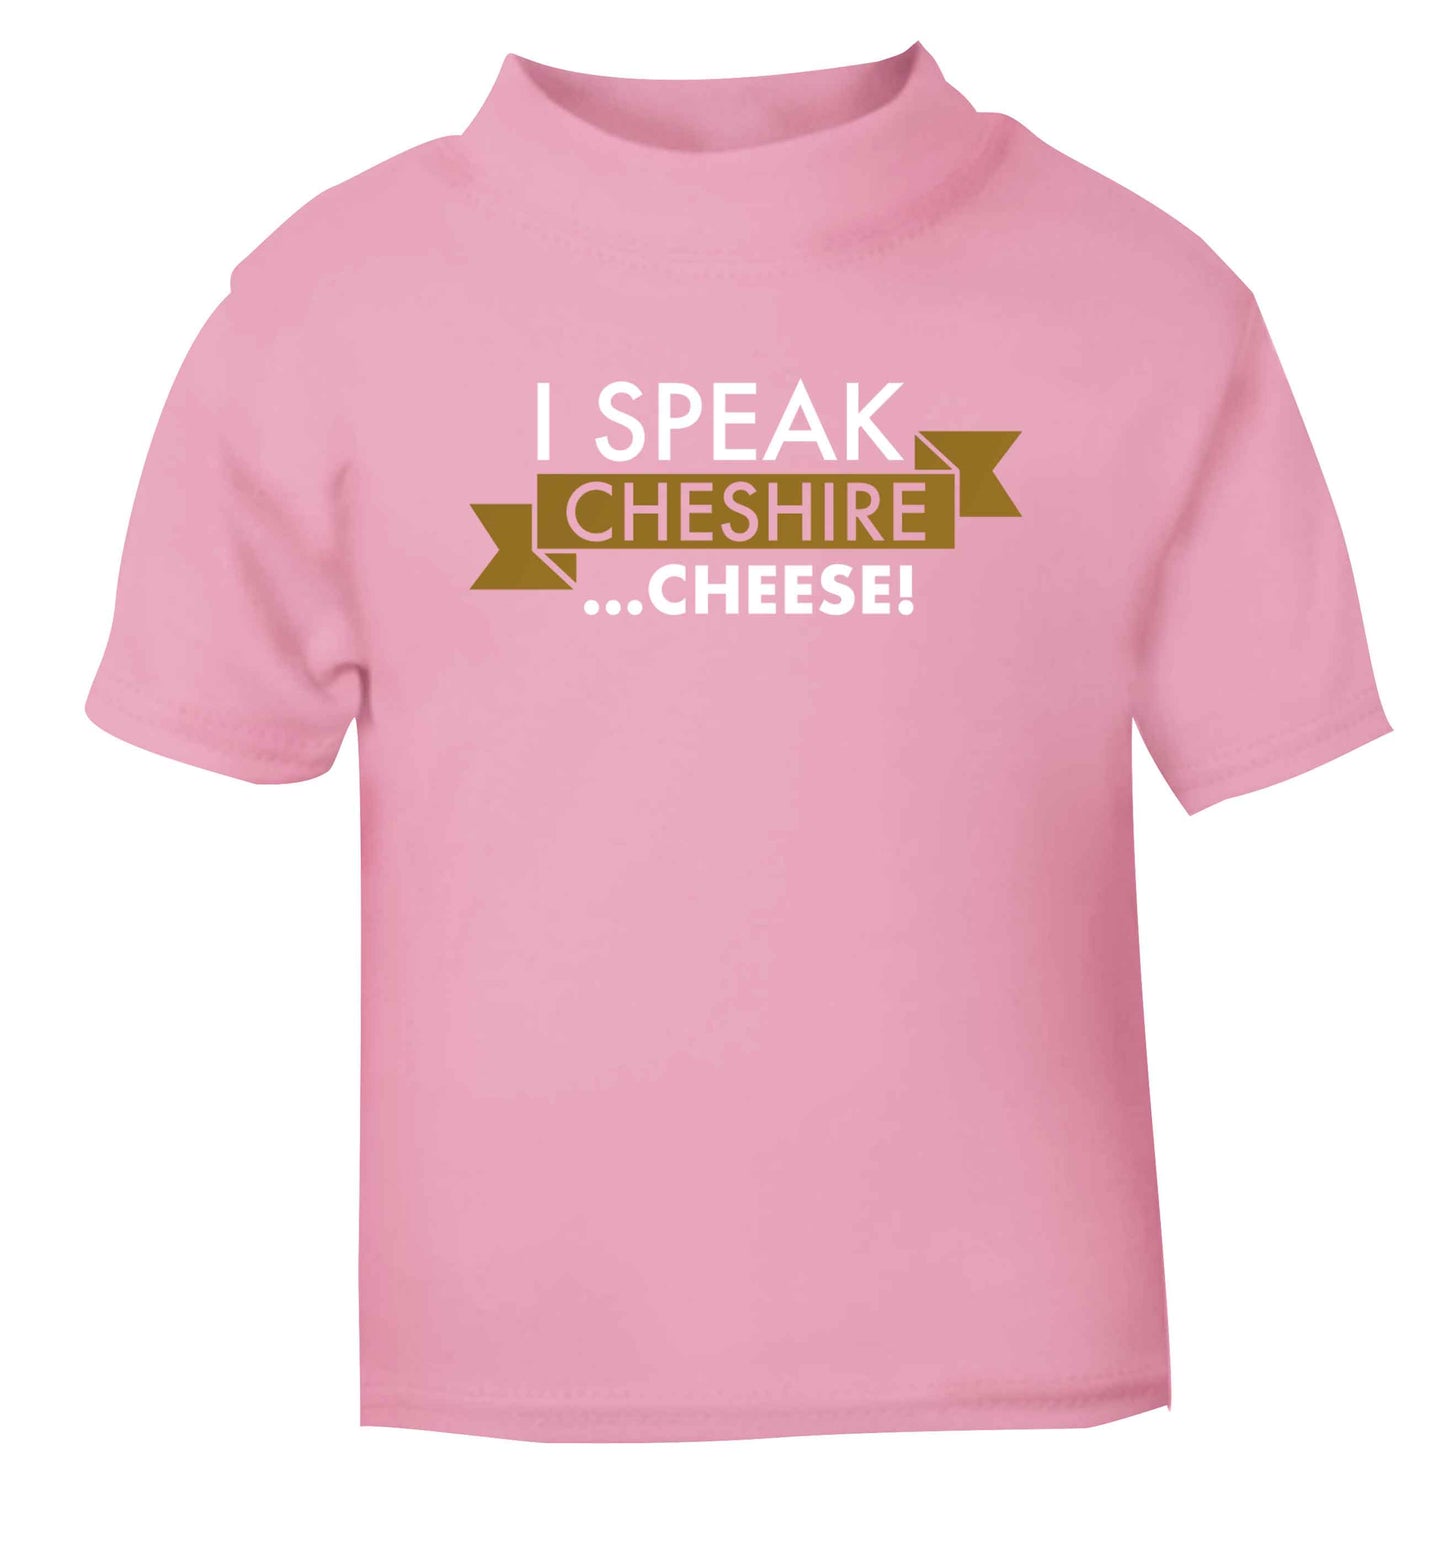 I speak Cheshire cheese light pink Baby Toddler Tshirt 2 Years